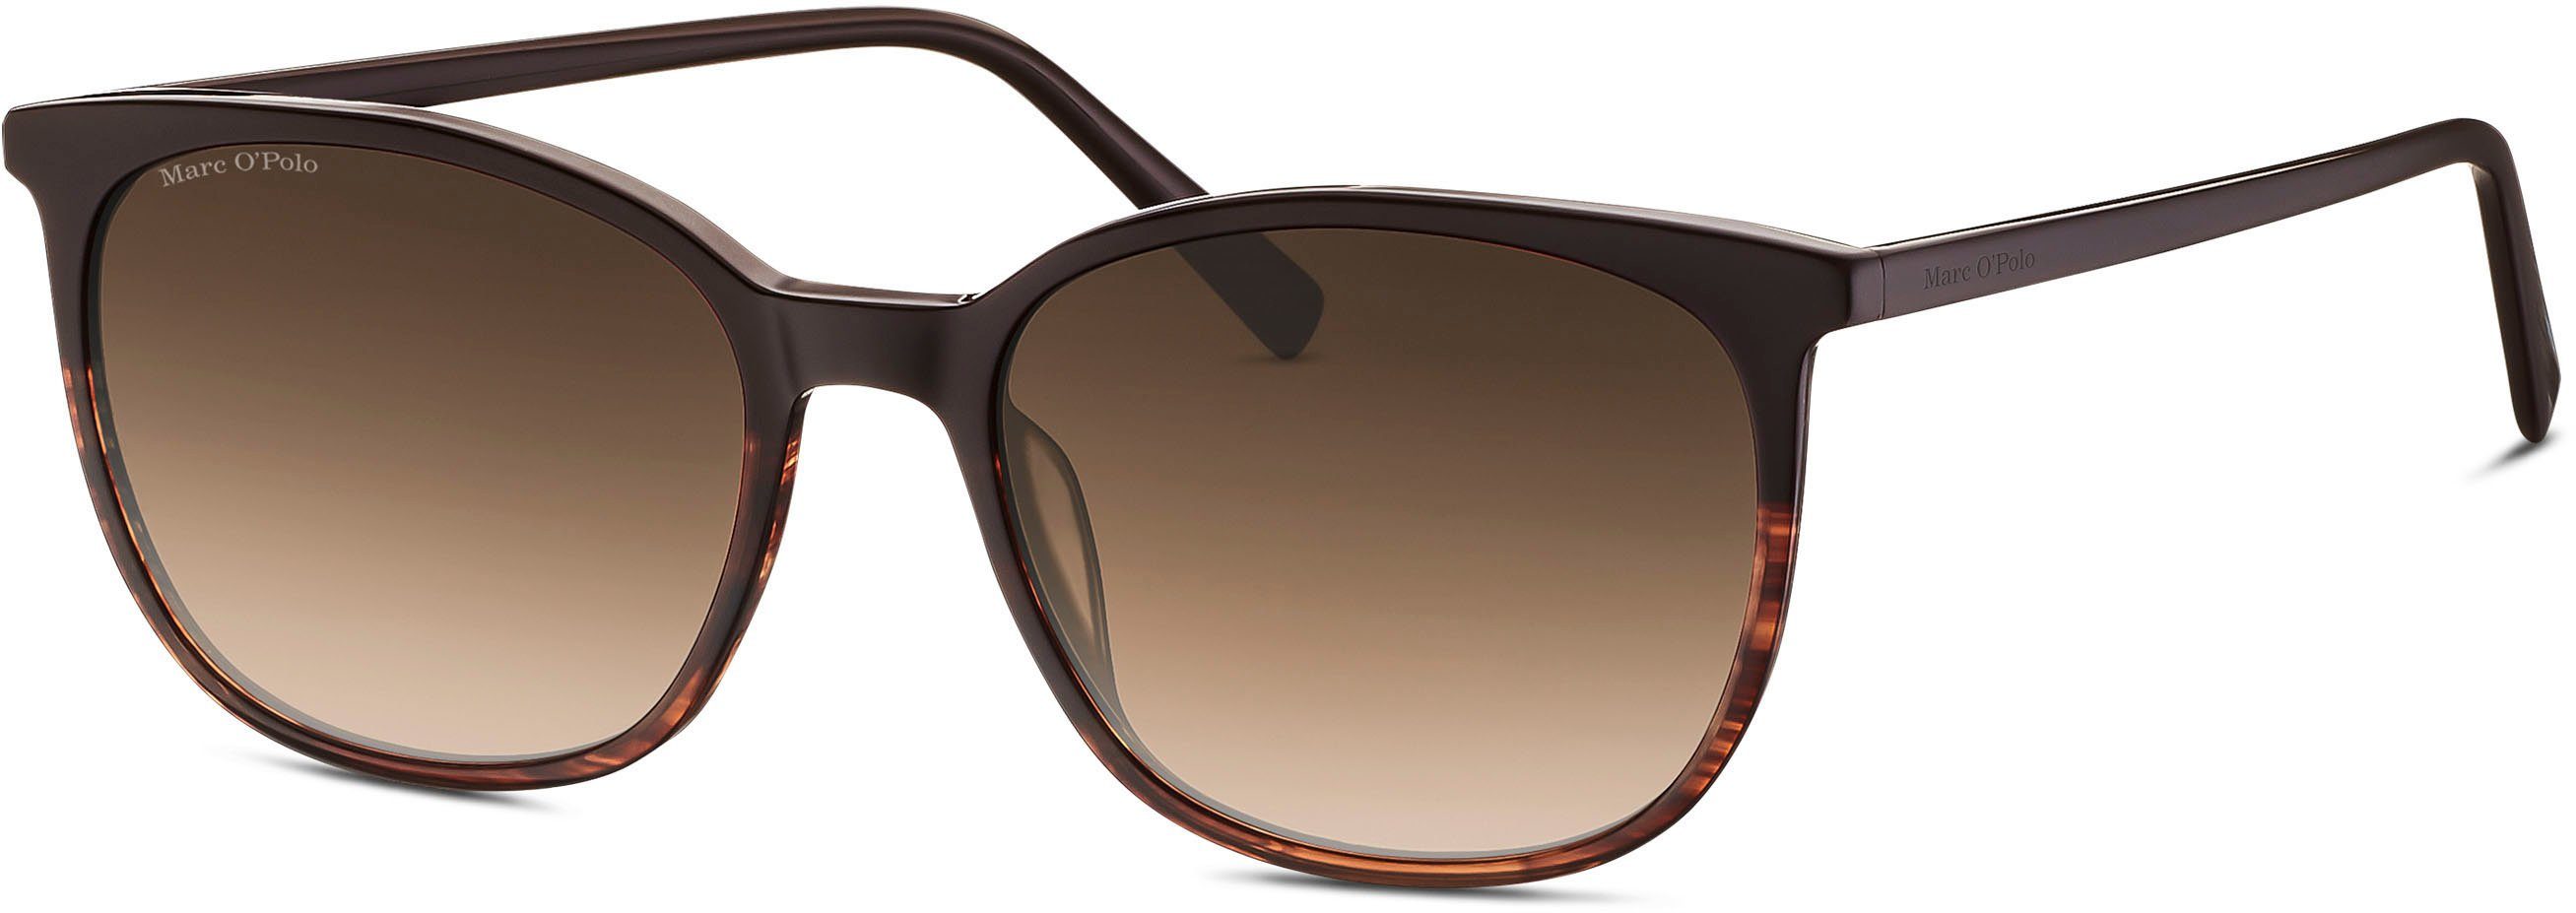 506188 O'Polo Marc braun Modell Sonnenbrille